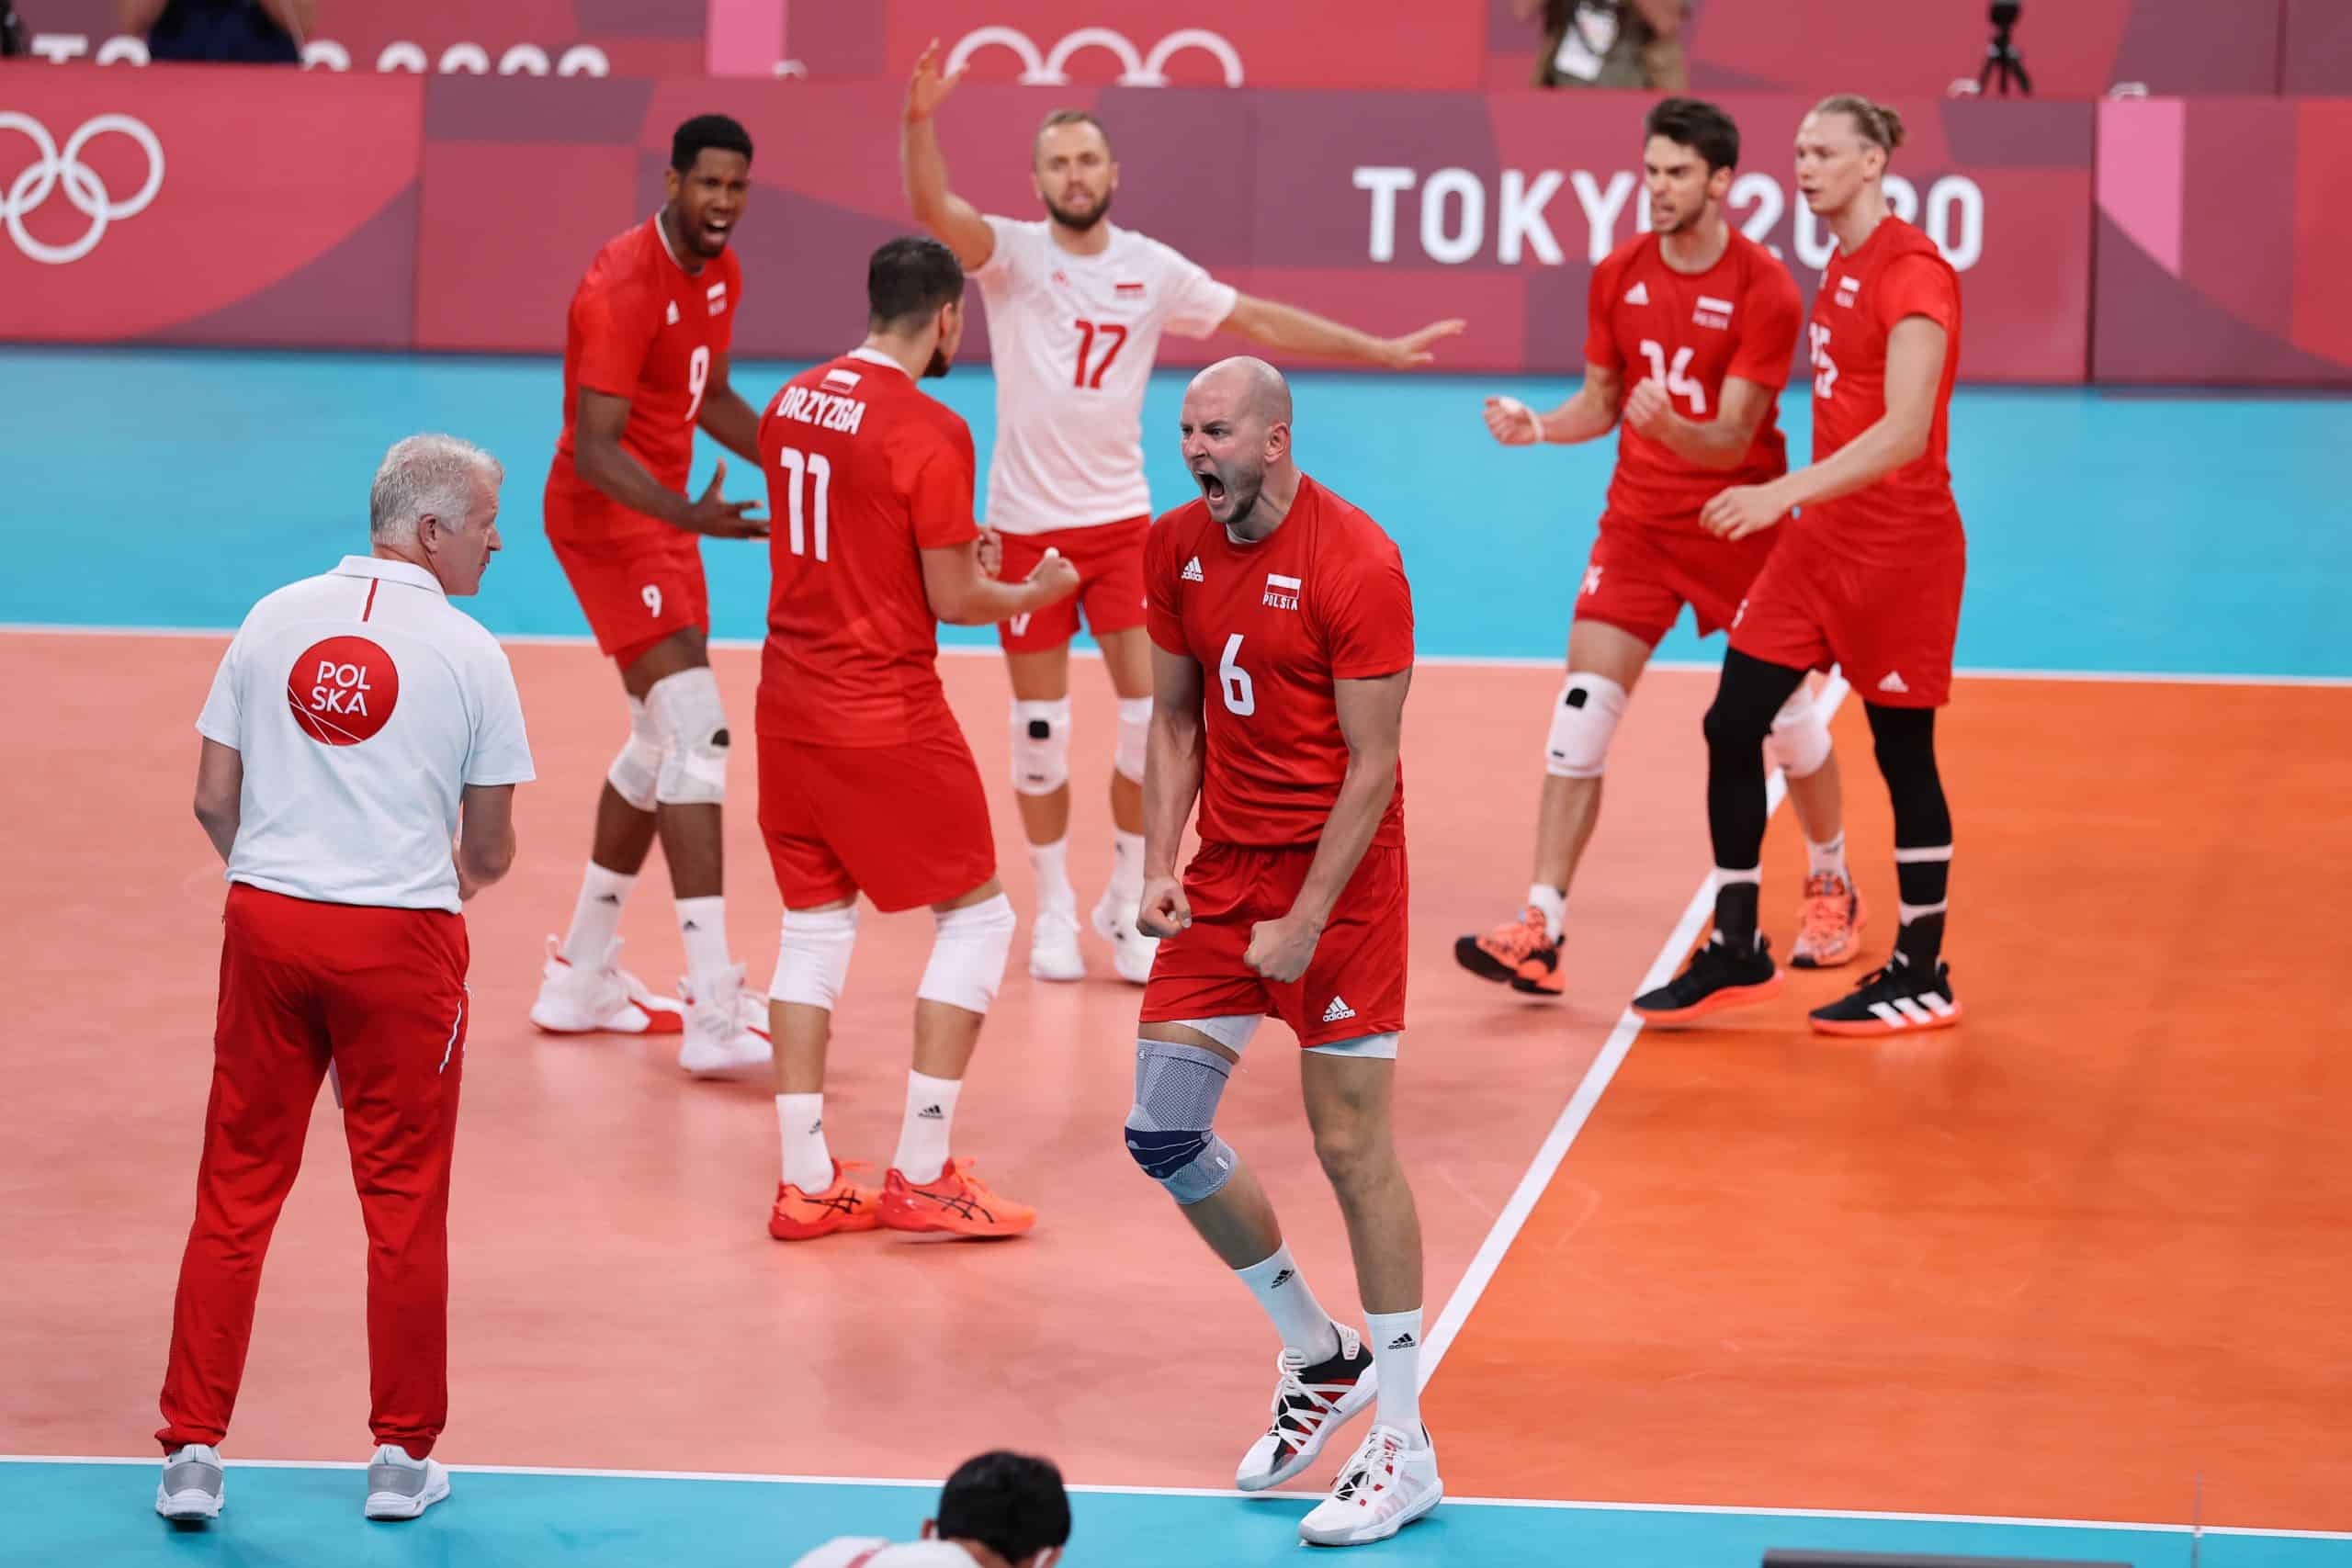 Igrzyska Olimpijskie Tokio 2020: Polska nadal bez medalu. Porażka Igi Świątek, przełamanie siatkarzy